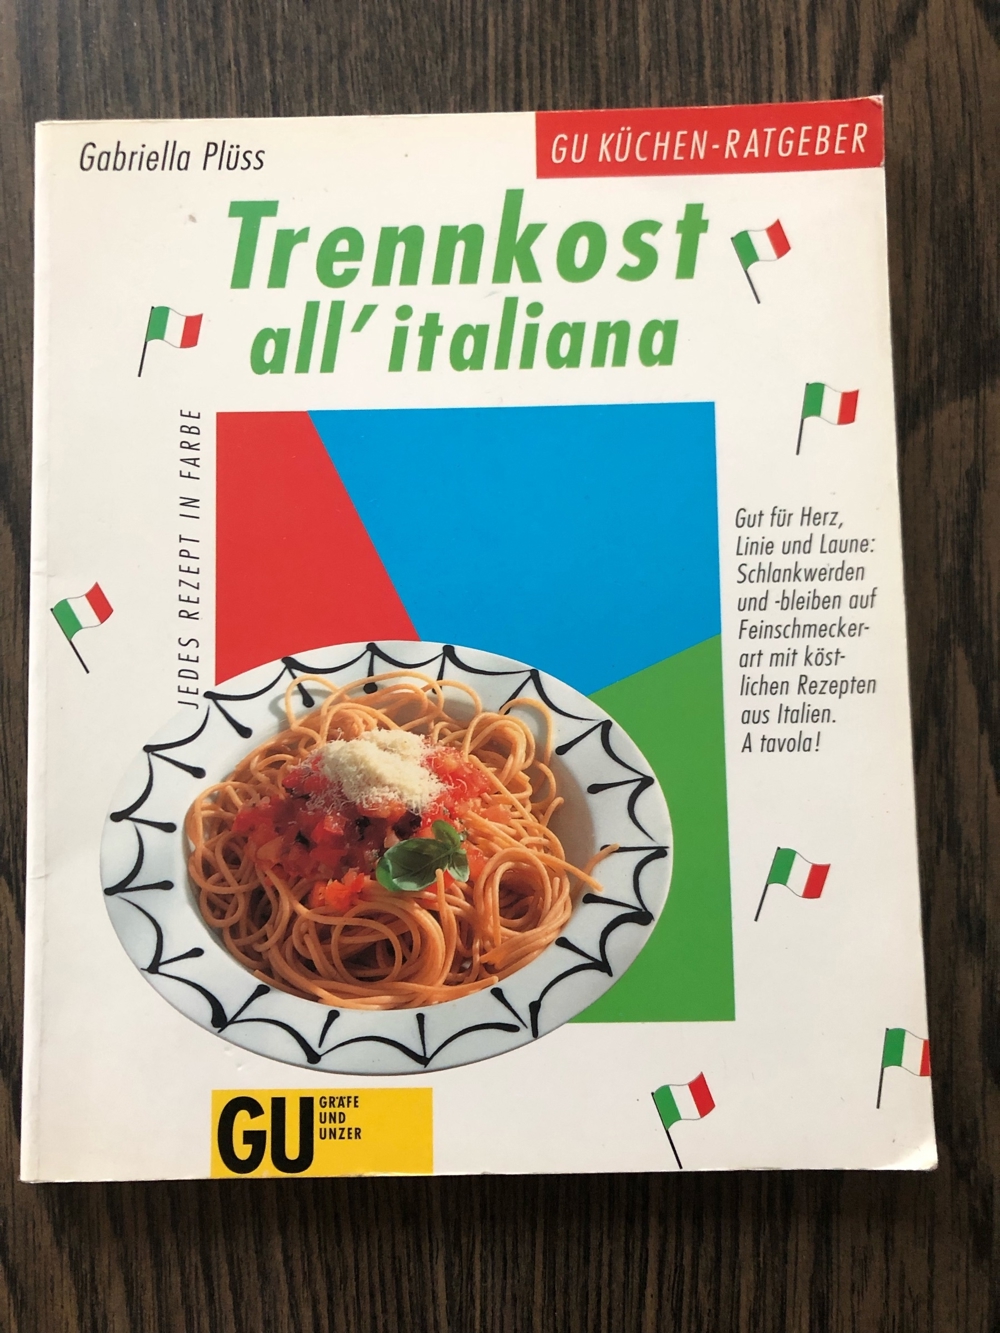 Trennkost all'italiana